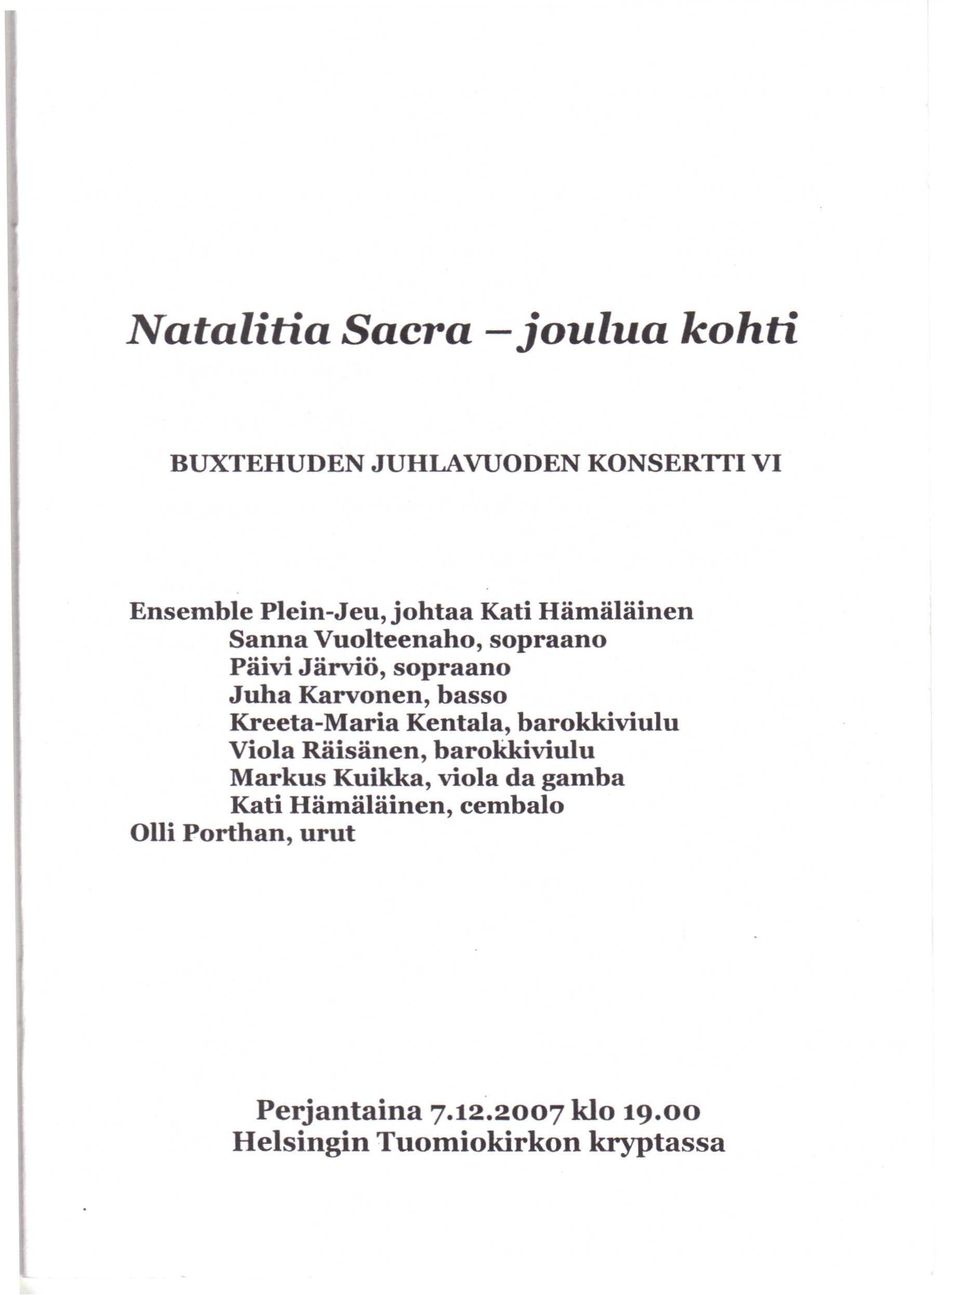 Maria Kentala, barokkiviulu Viola Räisänen, barokkiviulu Markus Kuikka, viola da gamba Kati